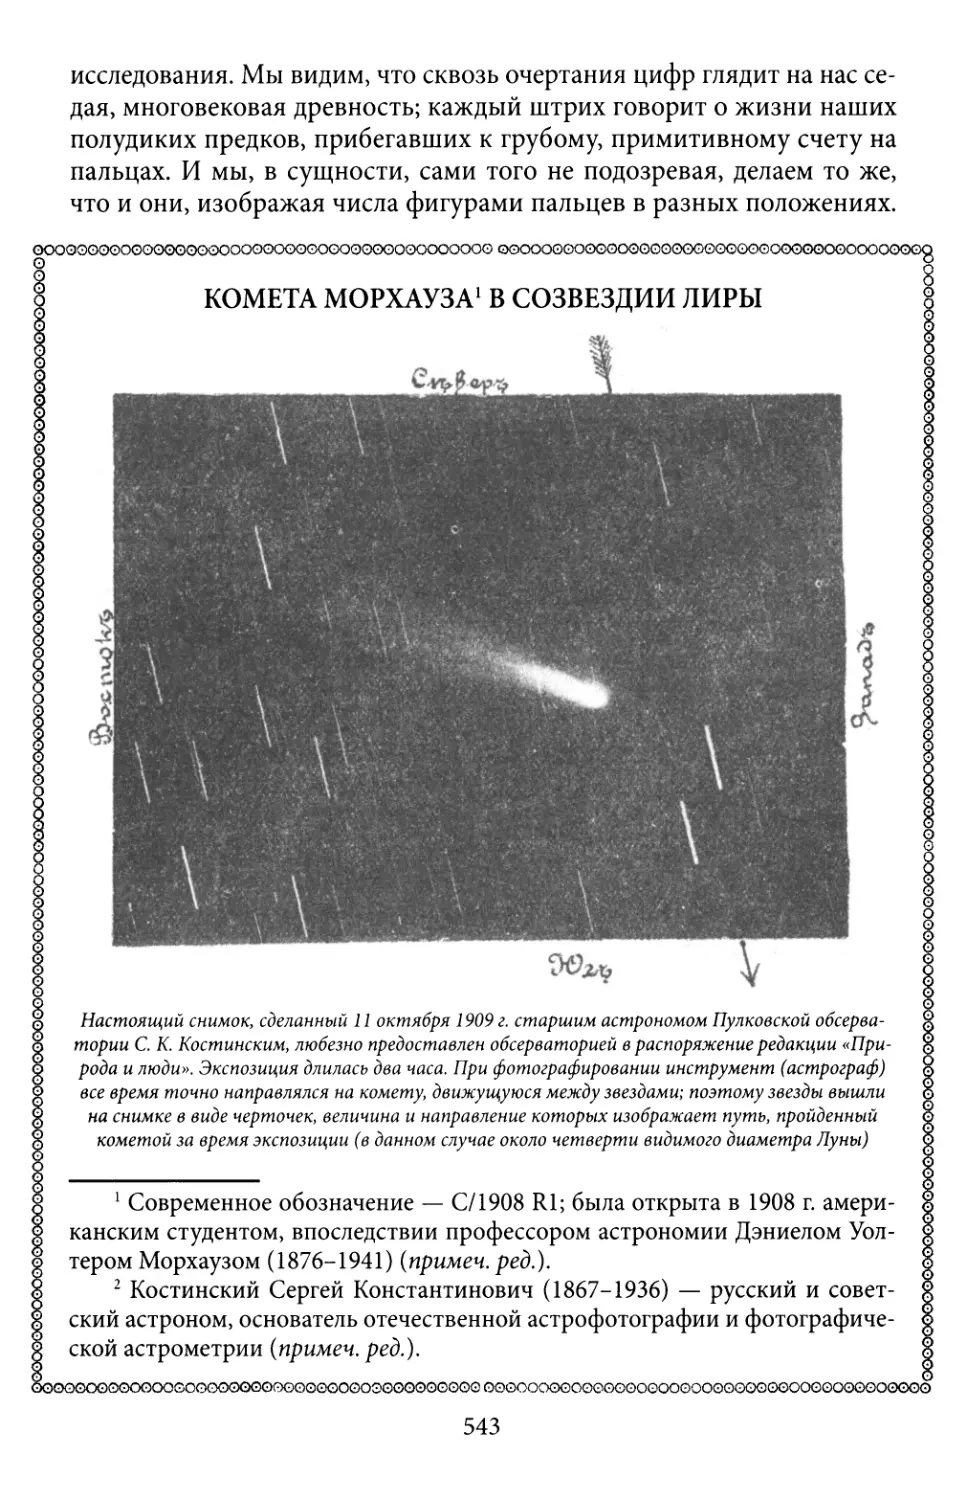 Комета Морхауза в созвездии Лиры